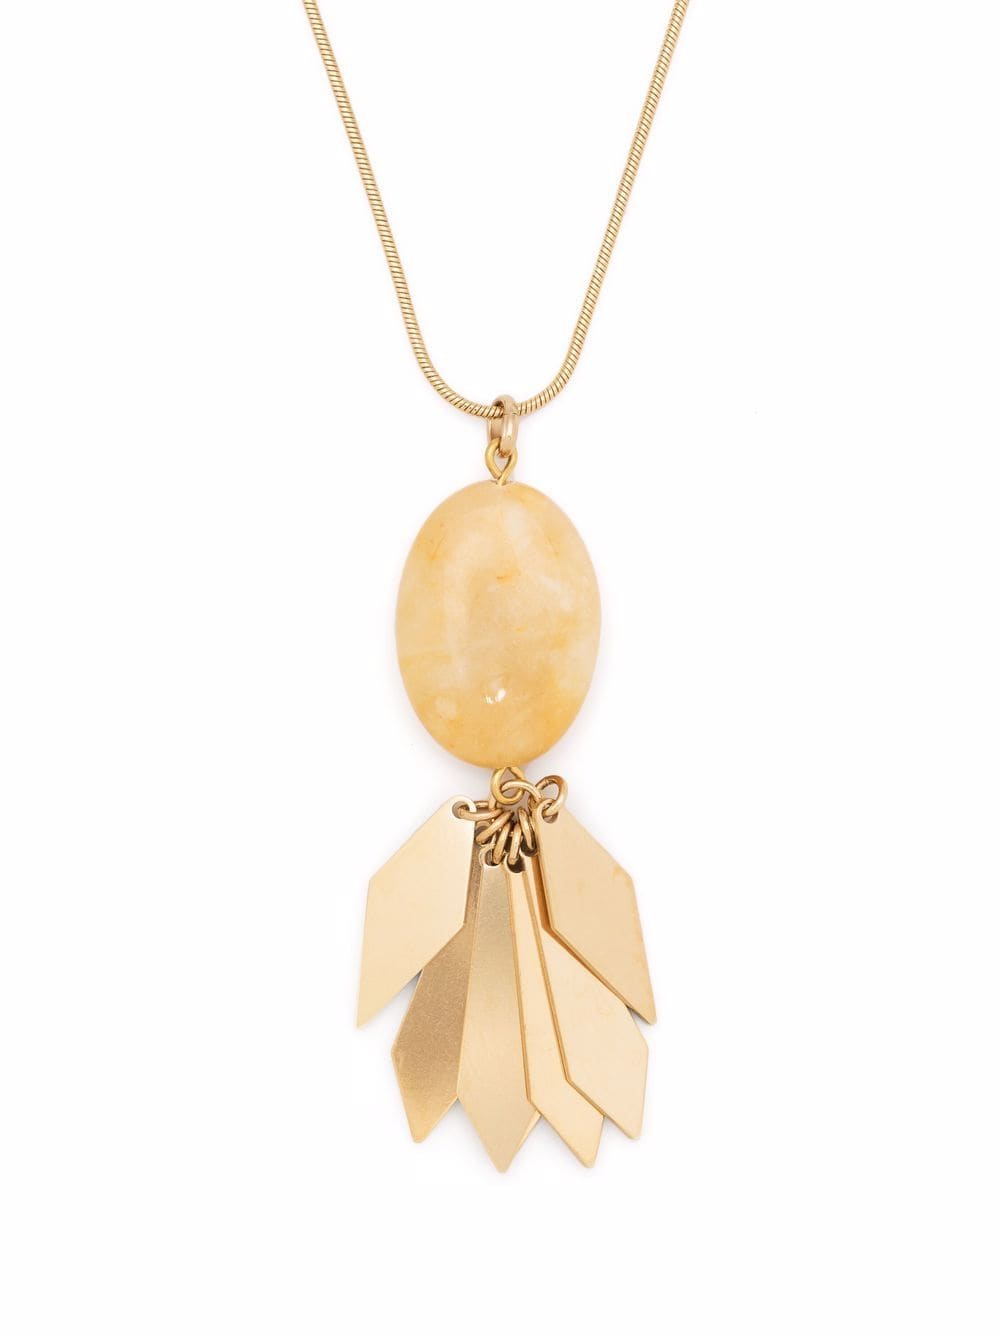 ISABEL MARANT stone pendant necklace - Gold von ISABEL MARANT